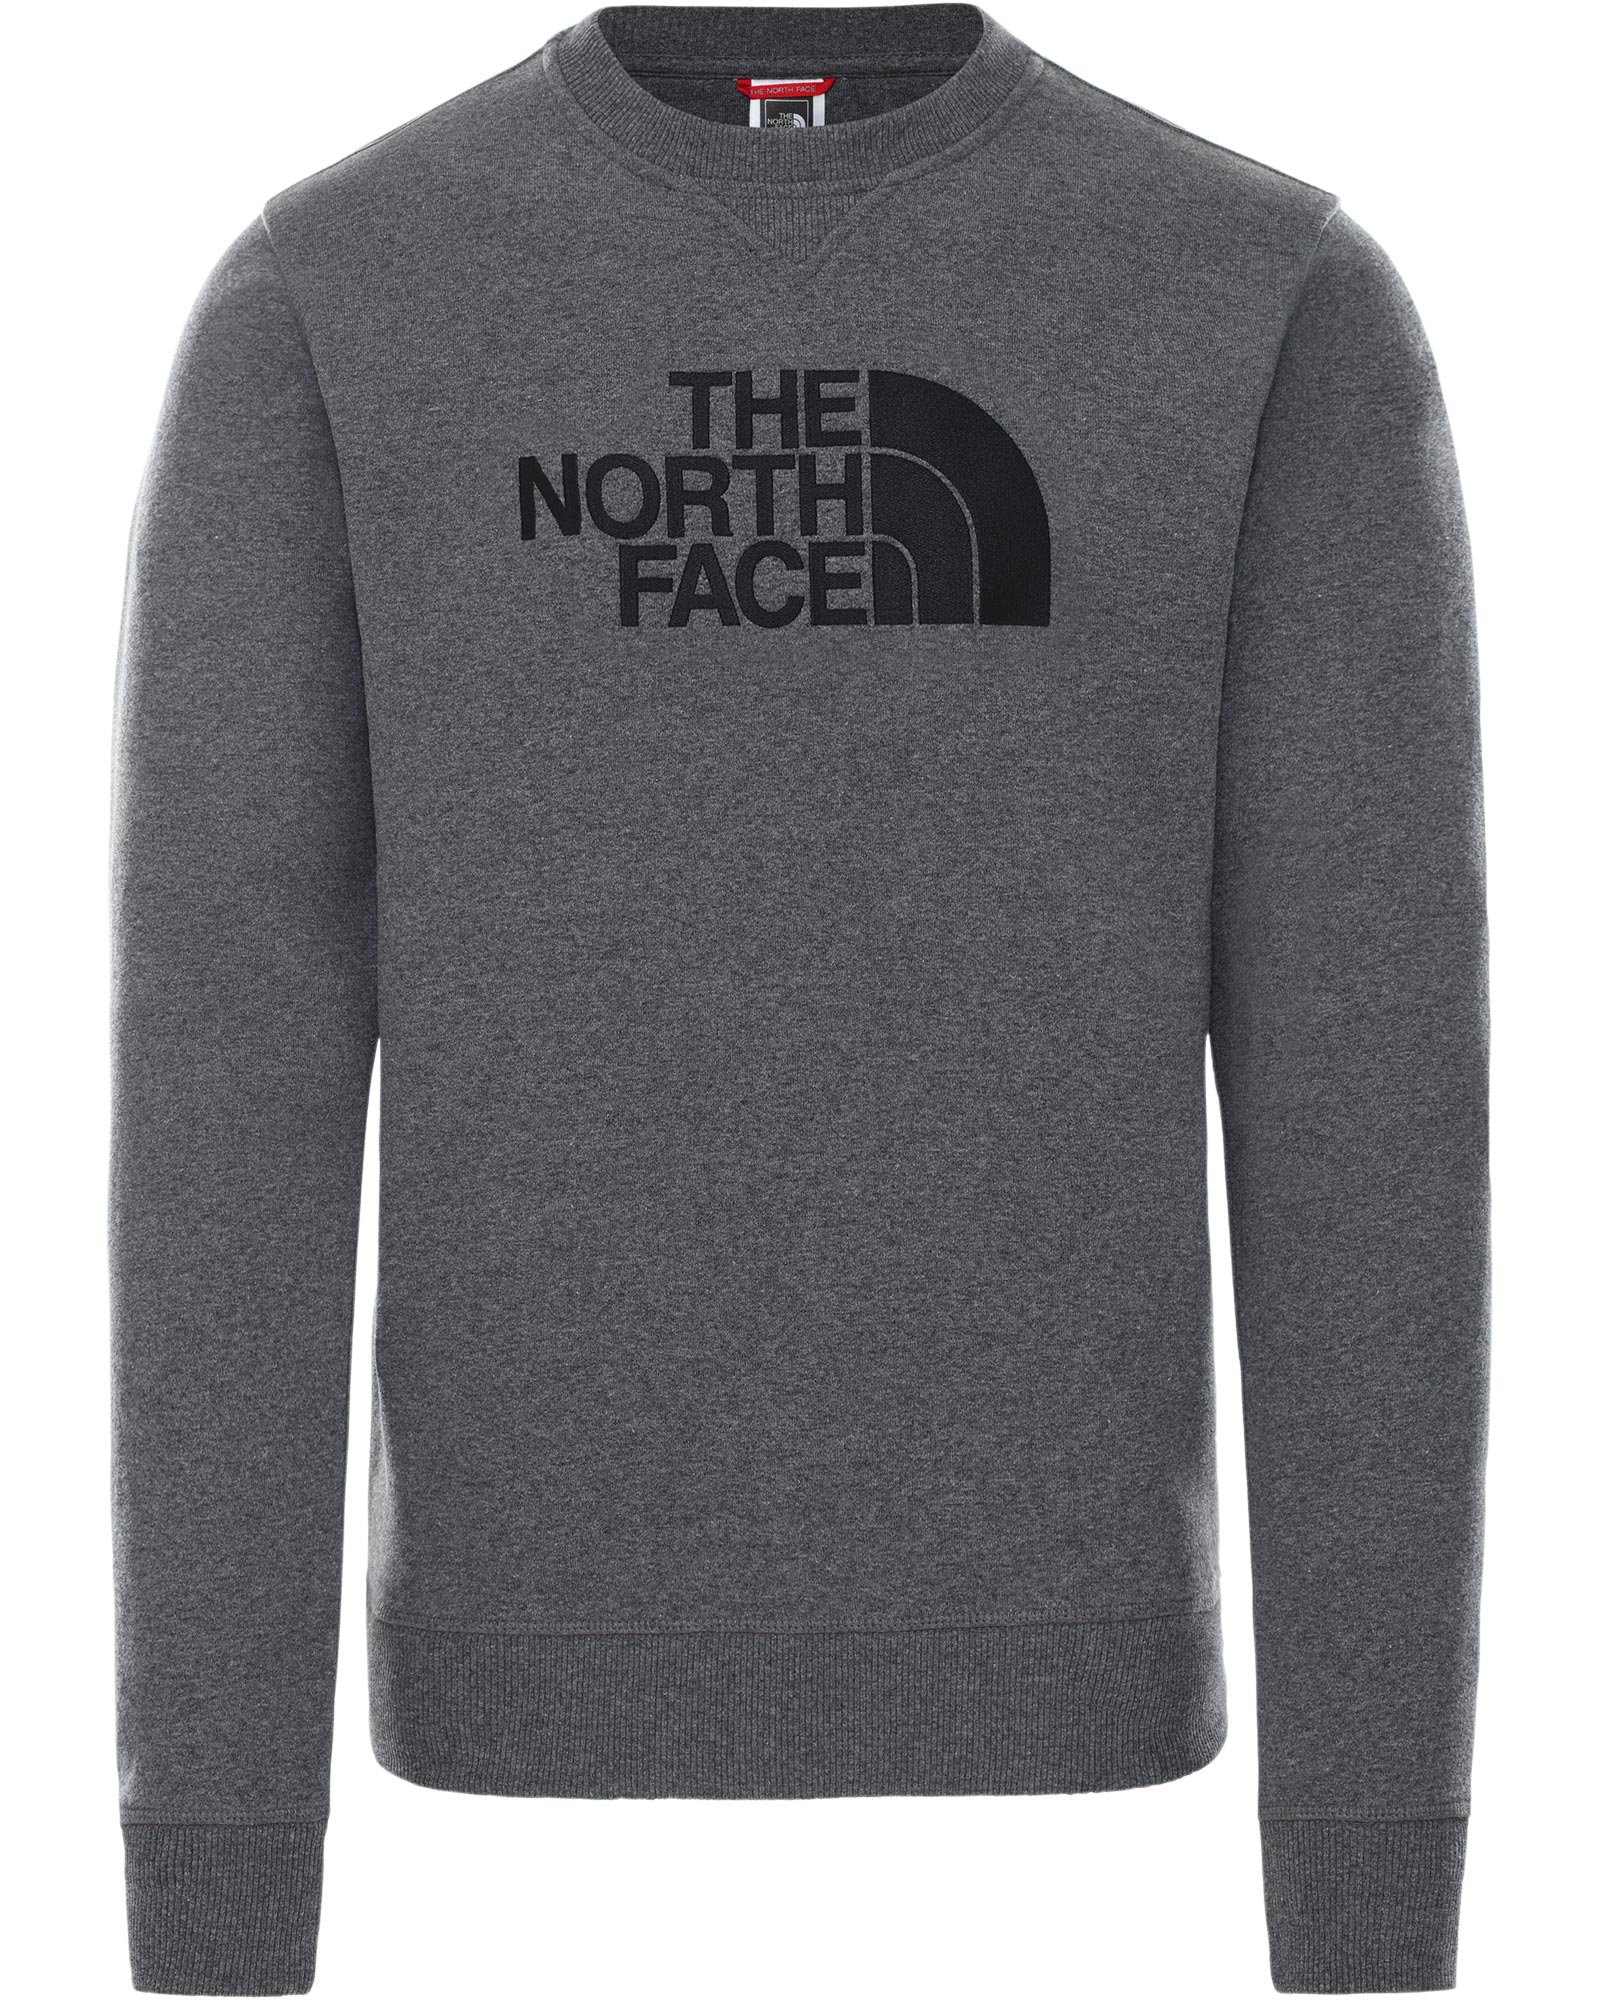 The North Face Drew Peak Men’s Crew - TNF Medium Grey Heather S